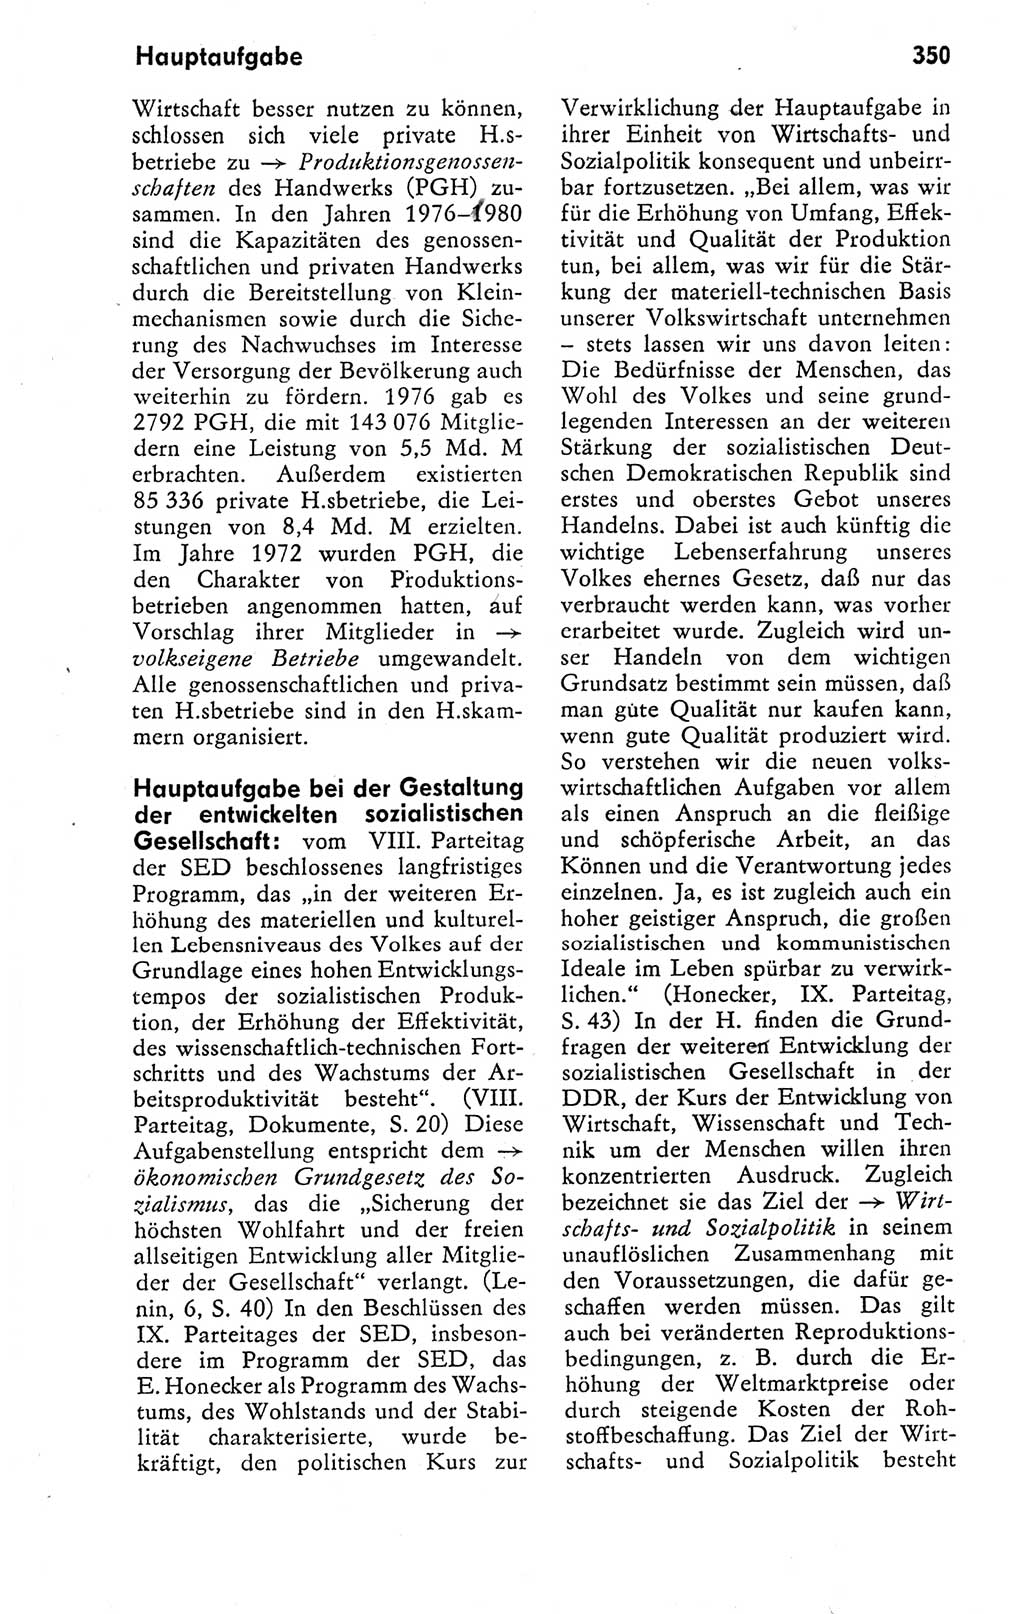 Kleines politisches Wörterbuch [Deutsche Demokratische Republik (DDR)] 1978, Seite 350 (Kl. pol. Wb. DDR 1978, S. 350)